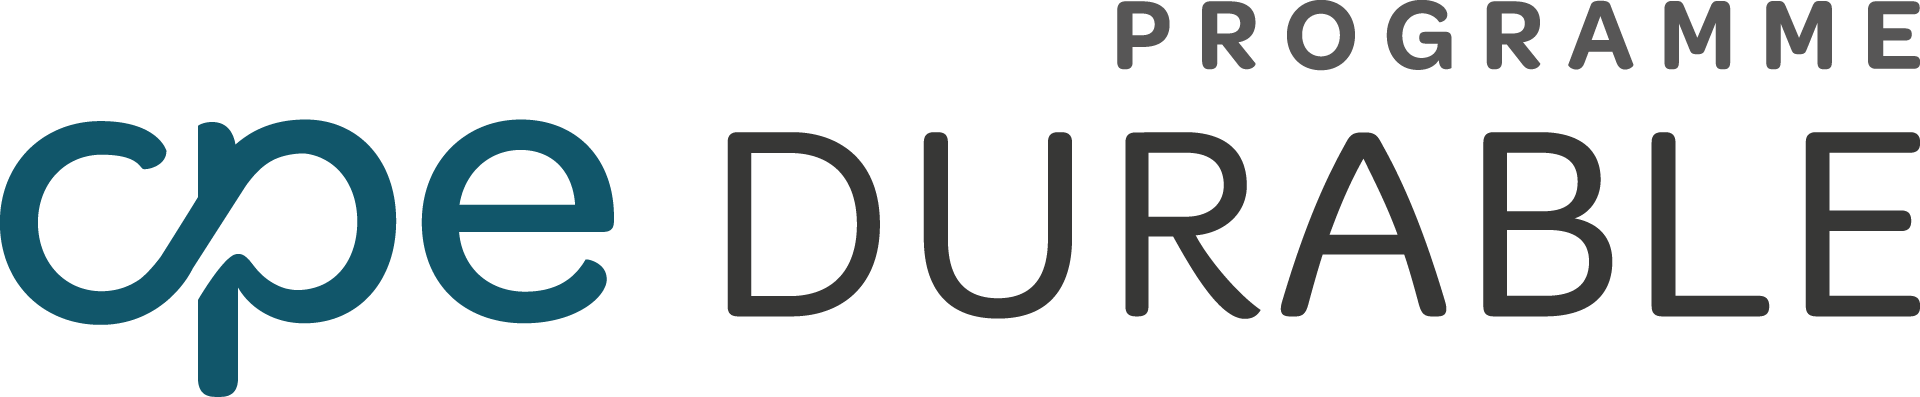 logo CPE Durable